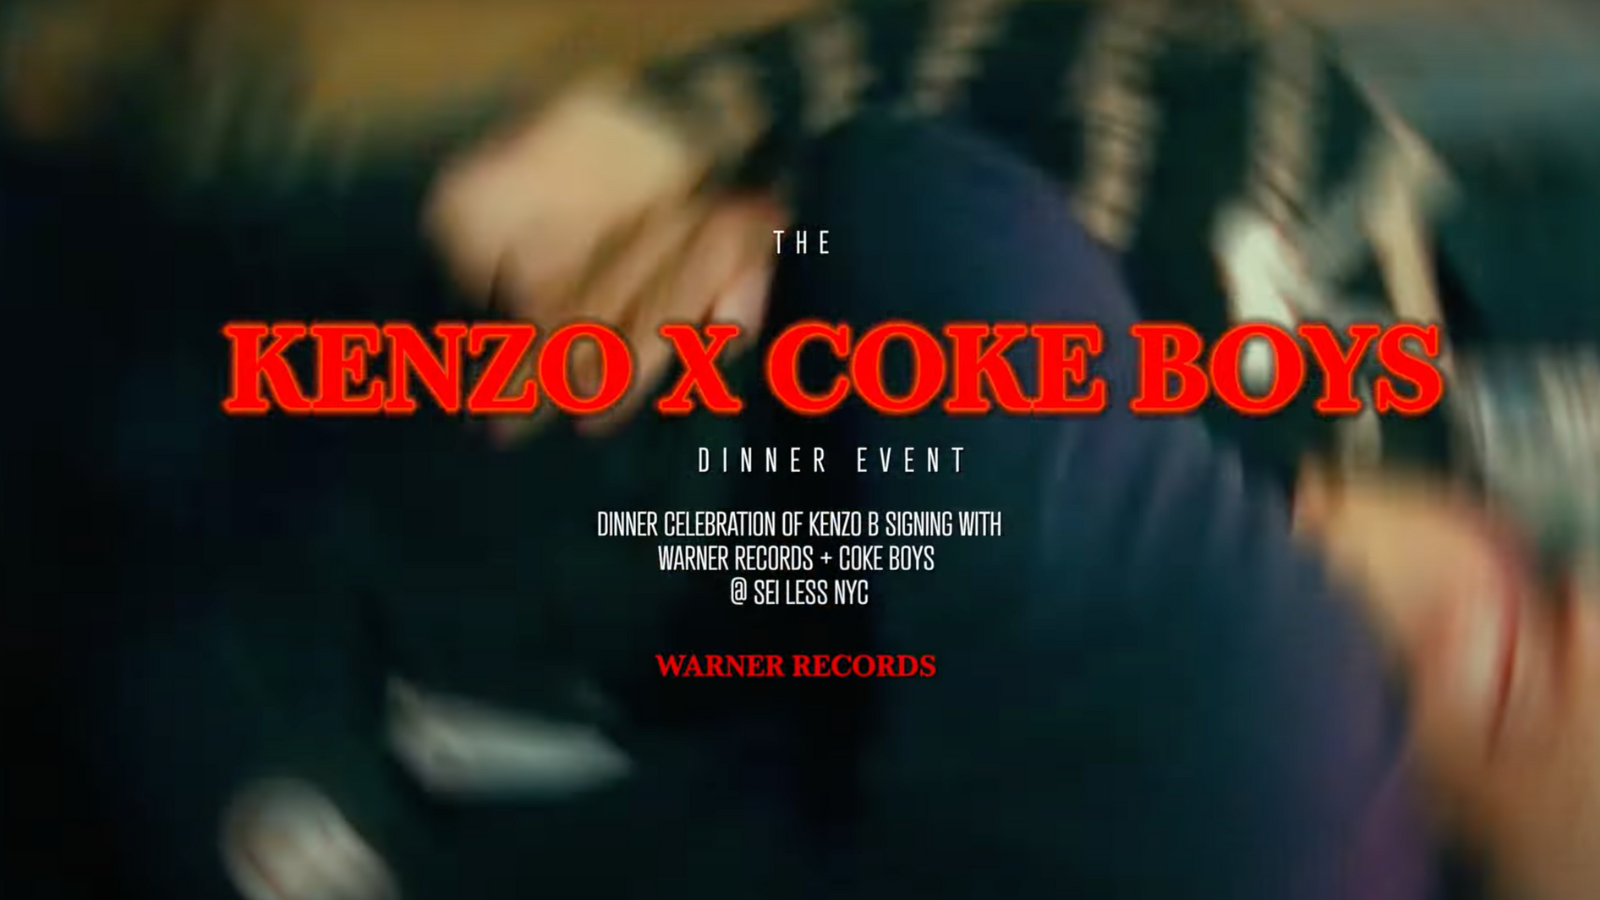 Kenzo B Coke Boys